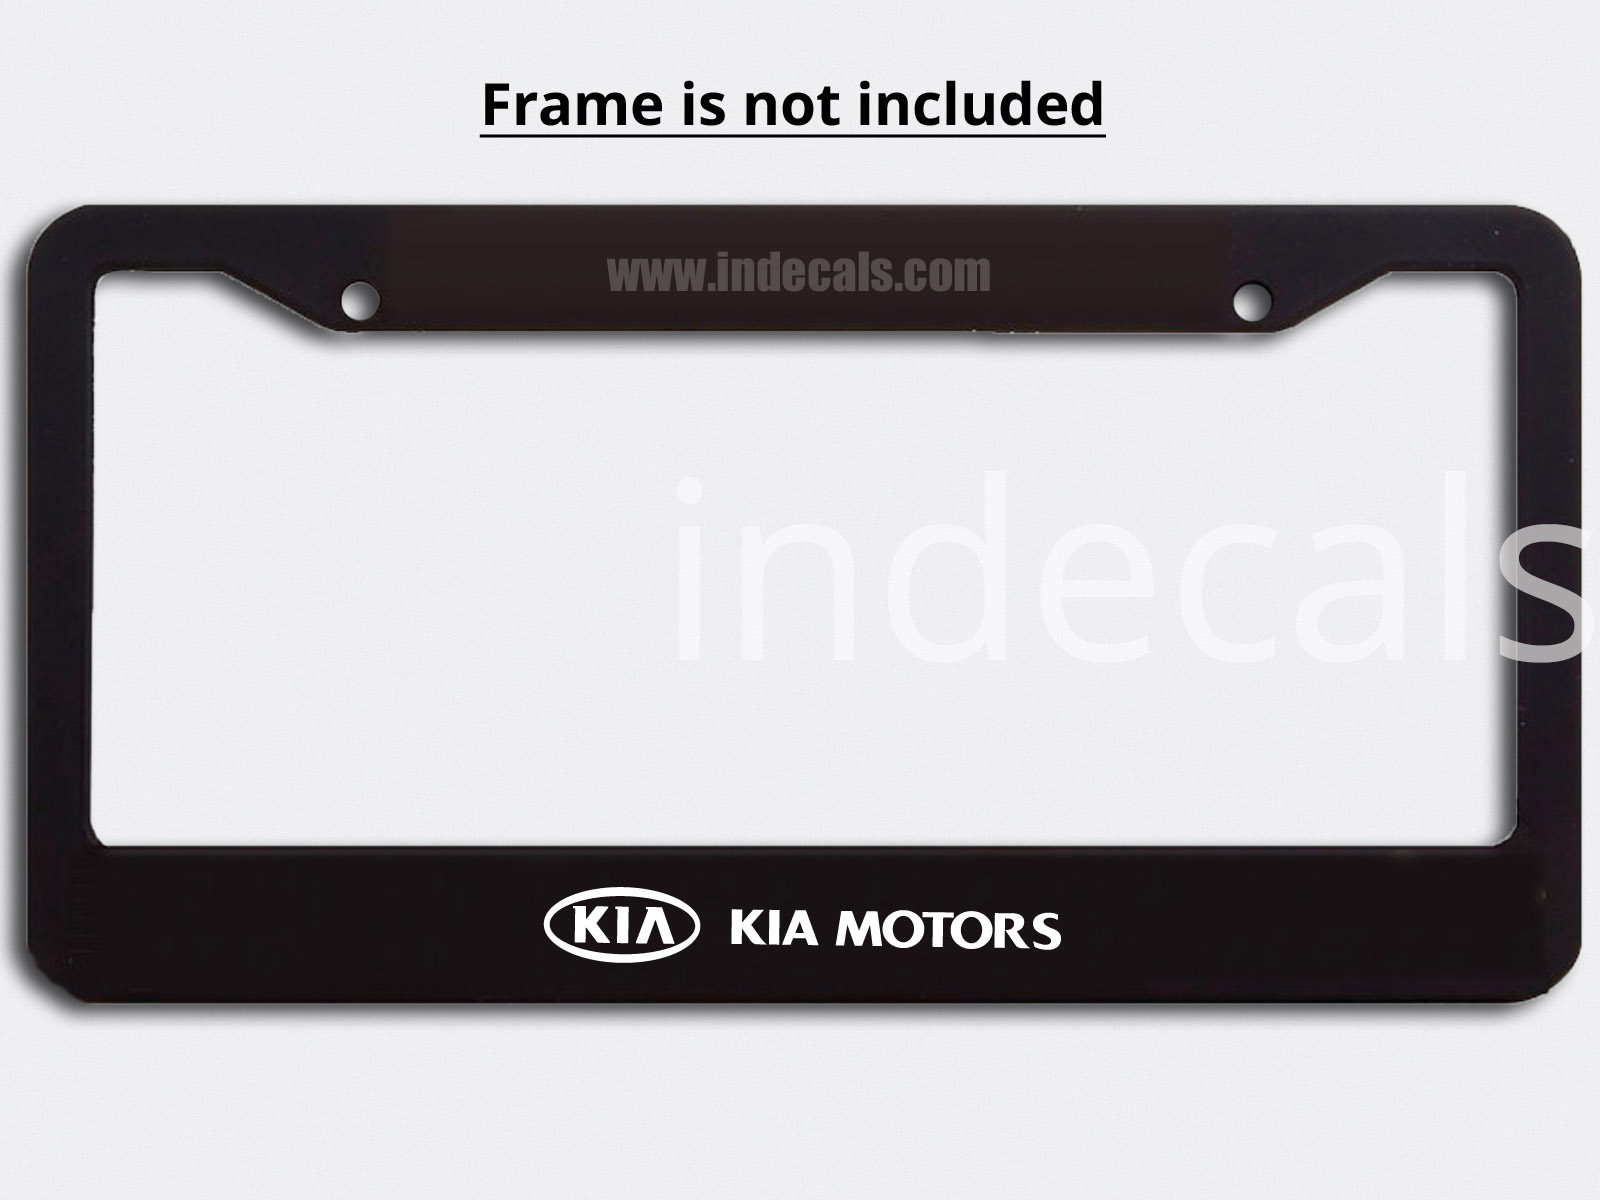 3 x Kia Stickers for Plate Frame - White